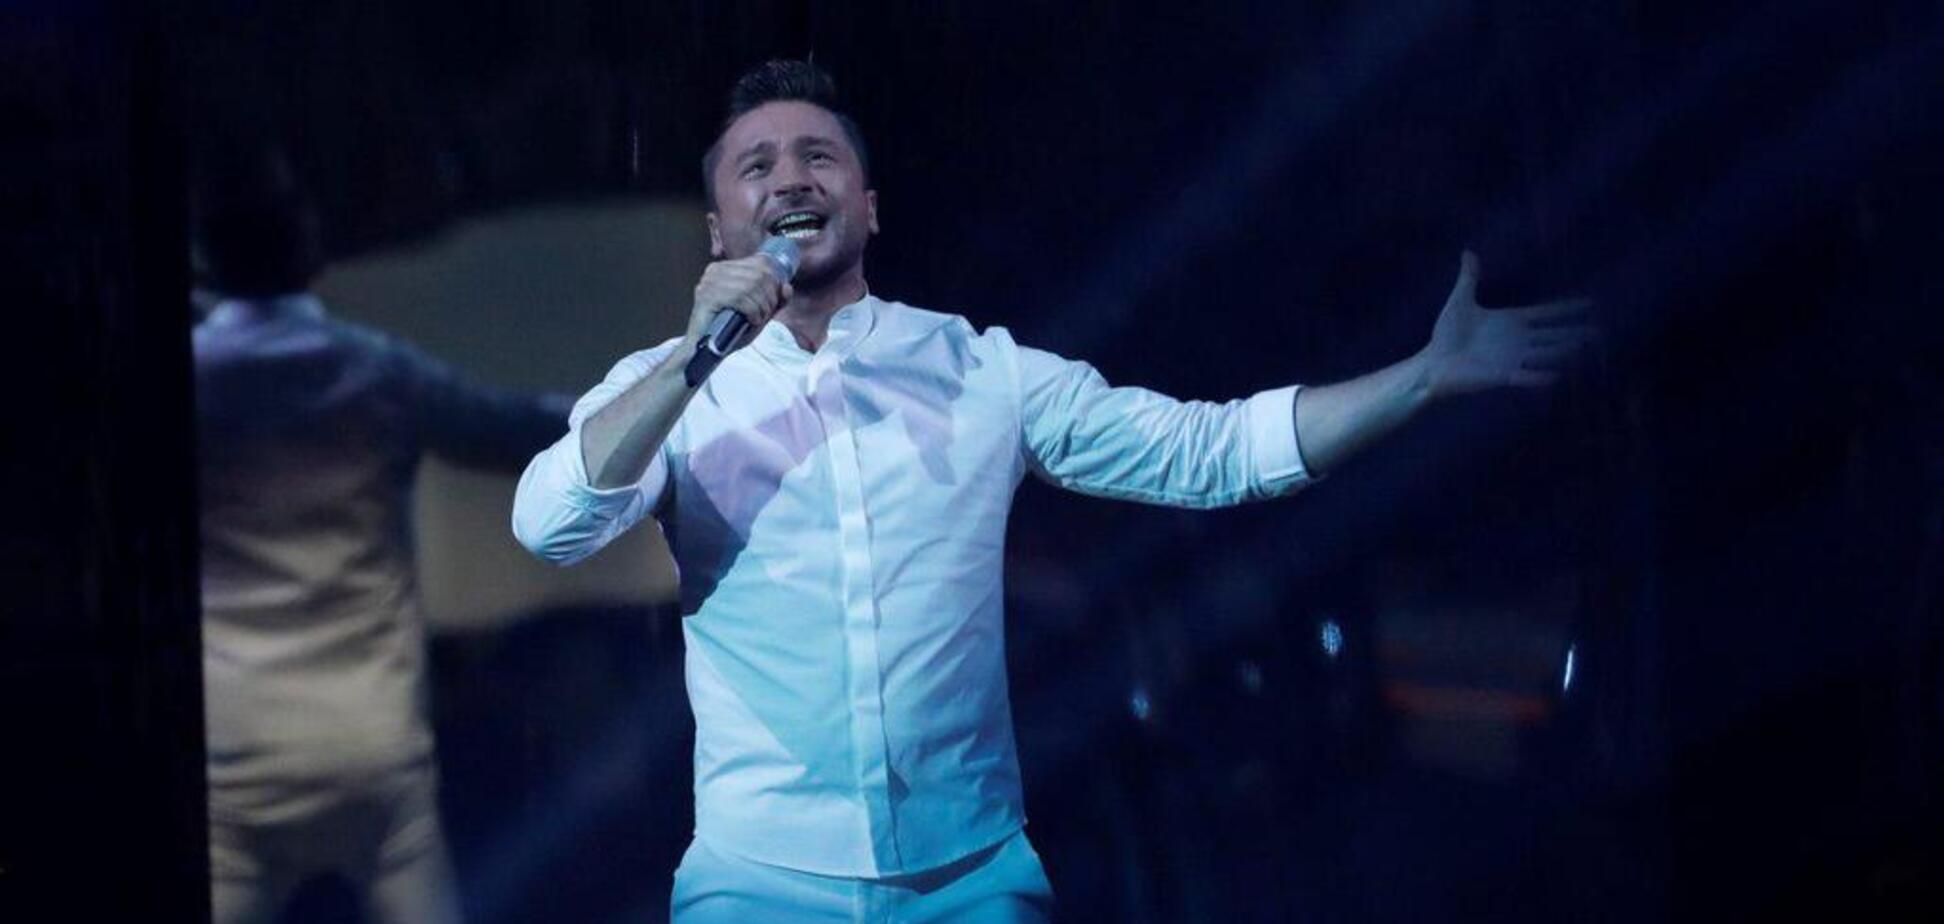 'У всех есть глаза и уши': Лазарев обвинил жюри Евровидения в предвзятости